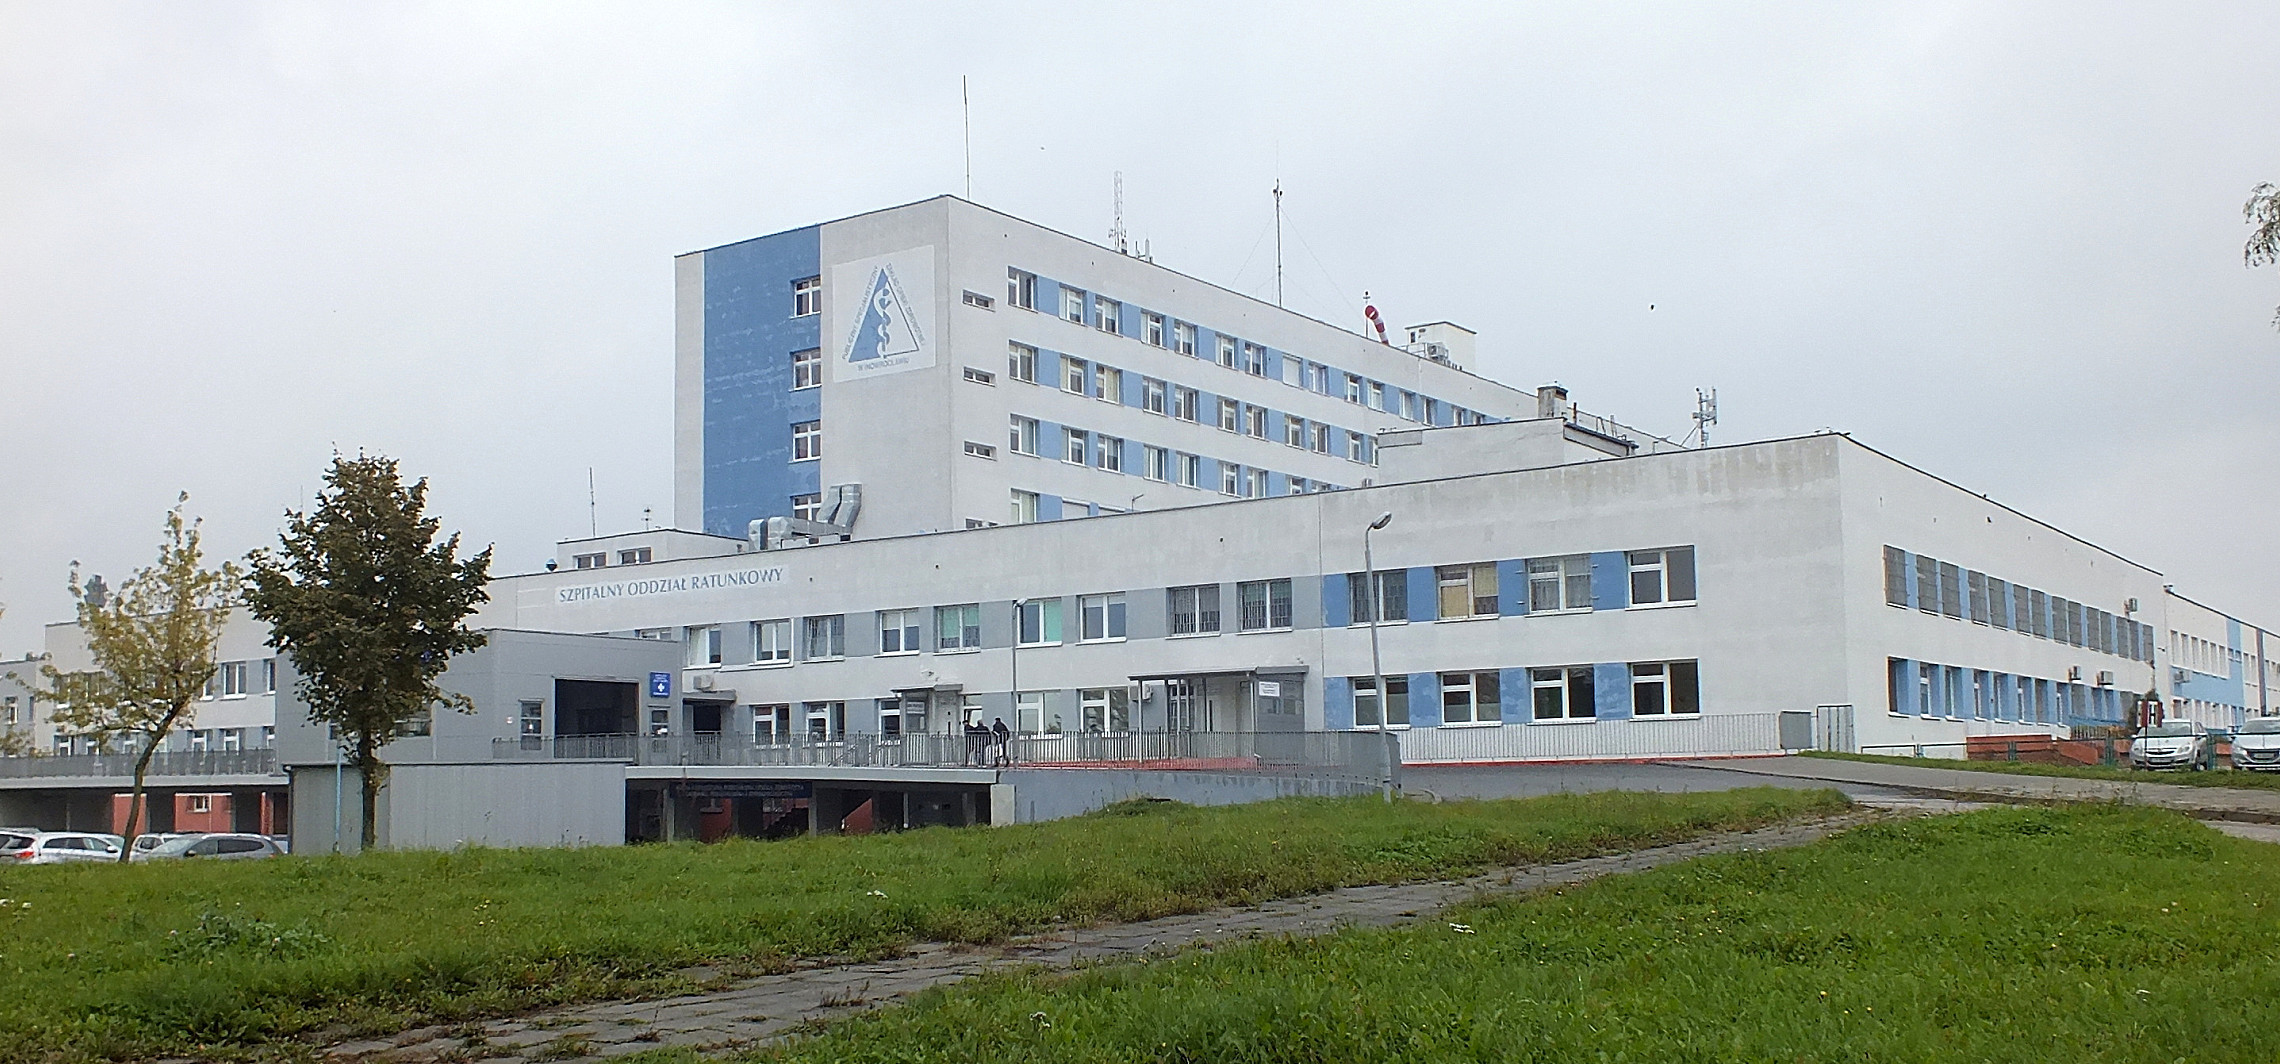 Inowrocław -  Szpitalne poradnie zmieniają lokalizację